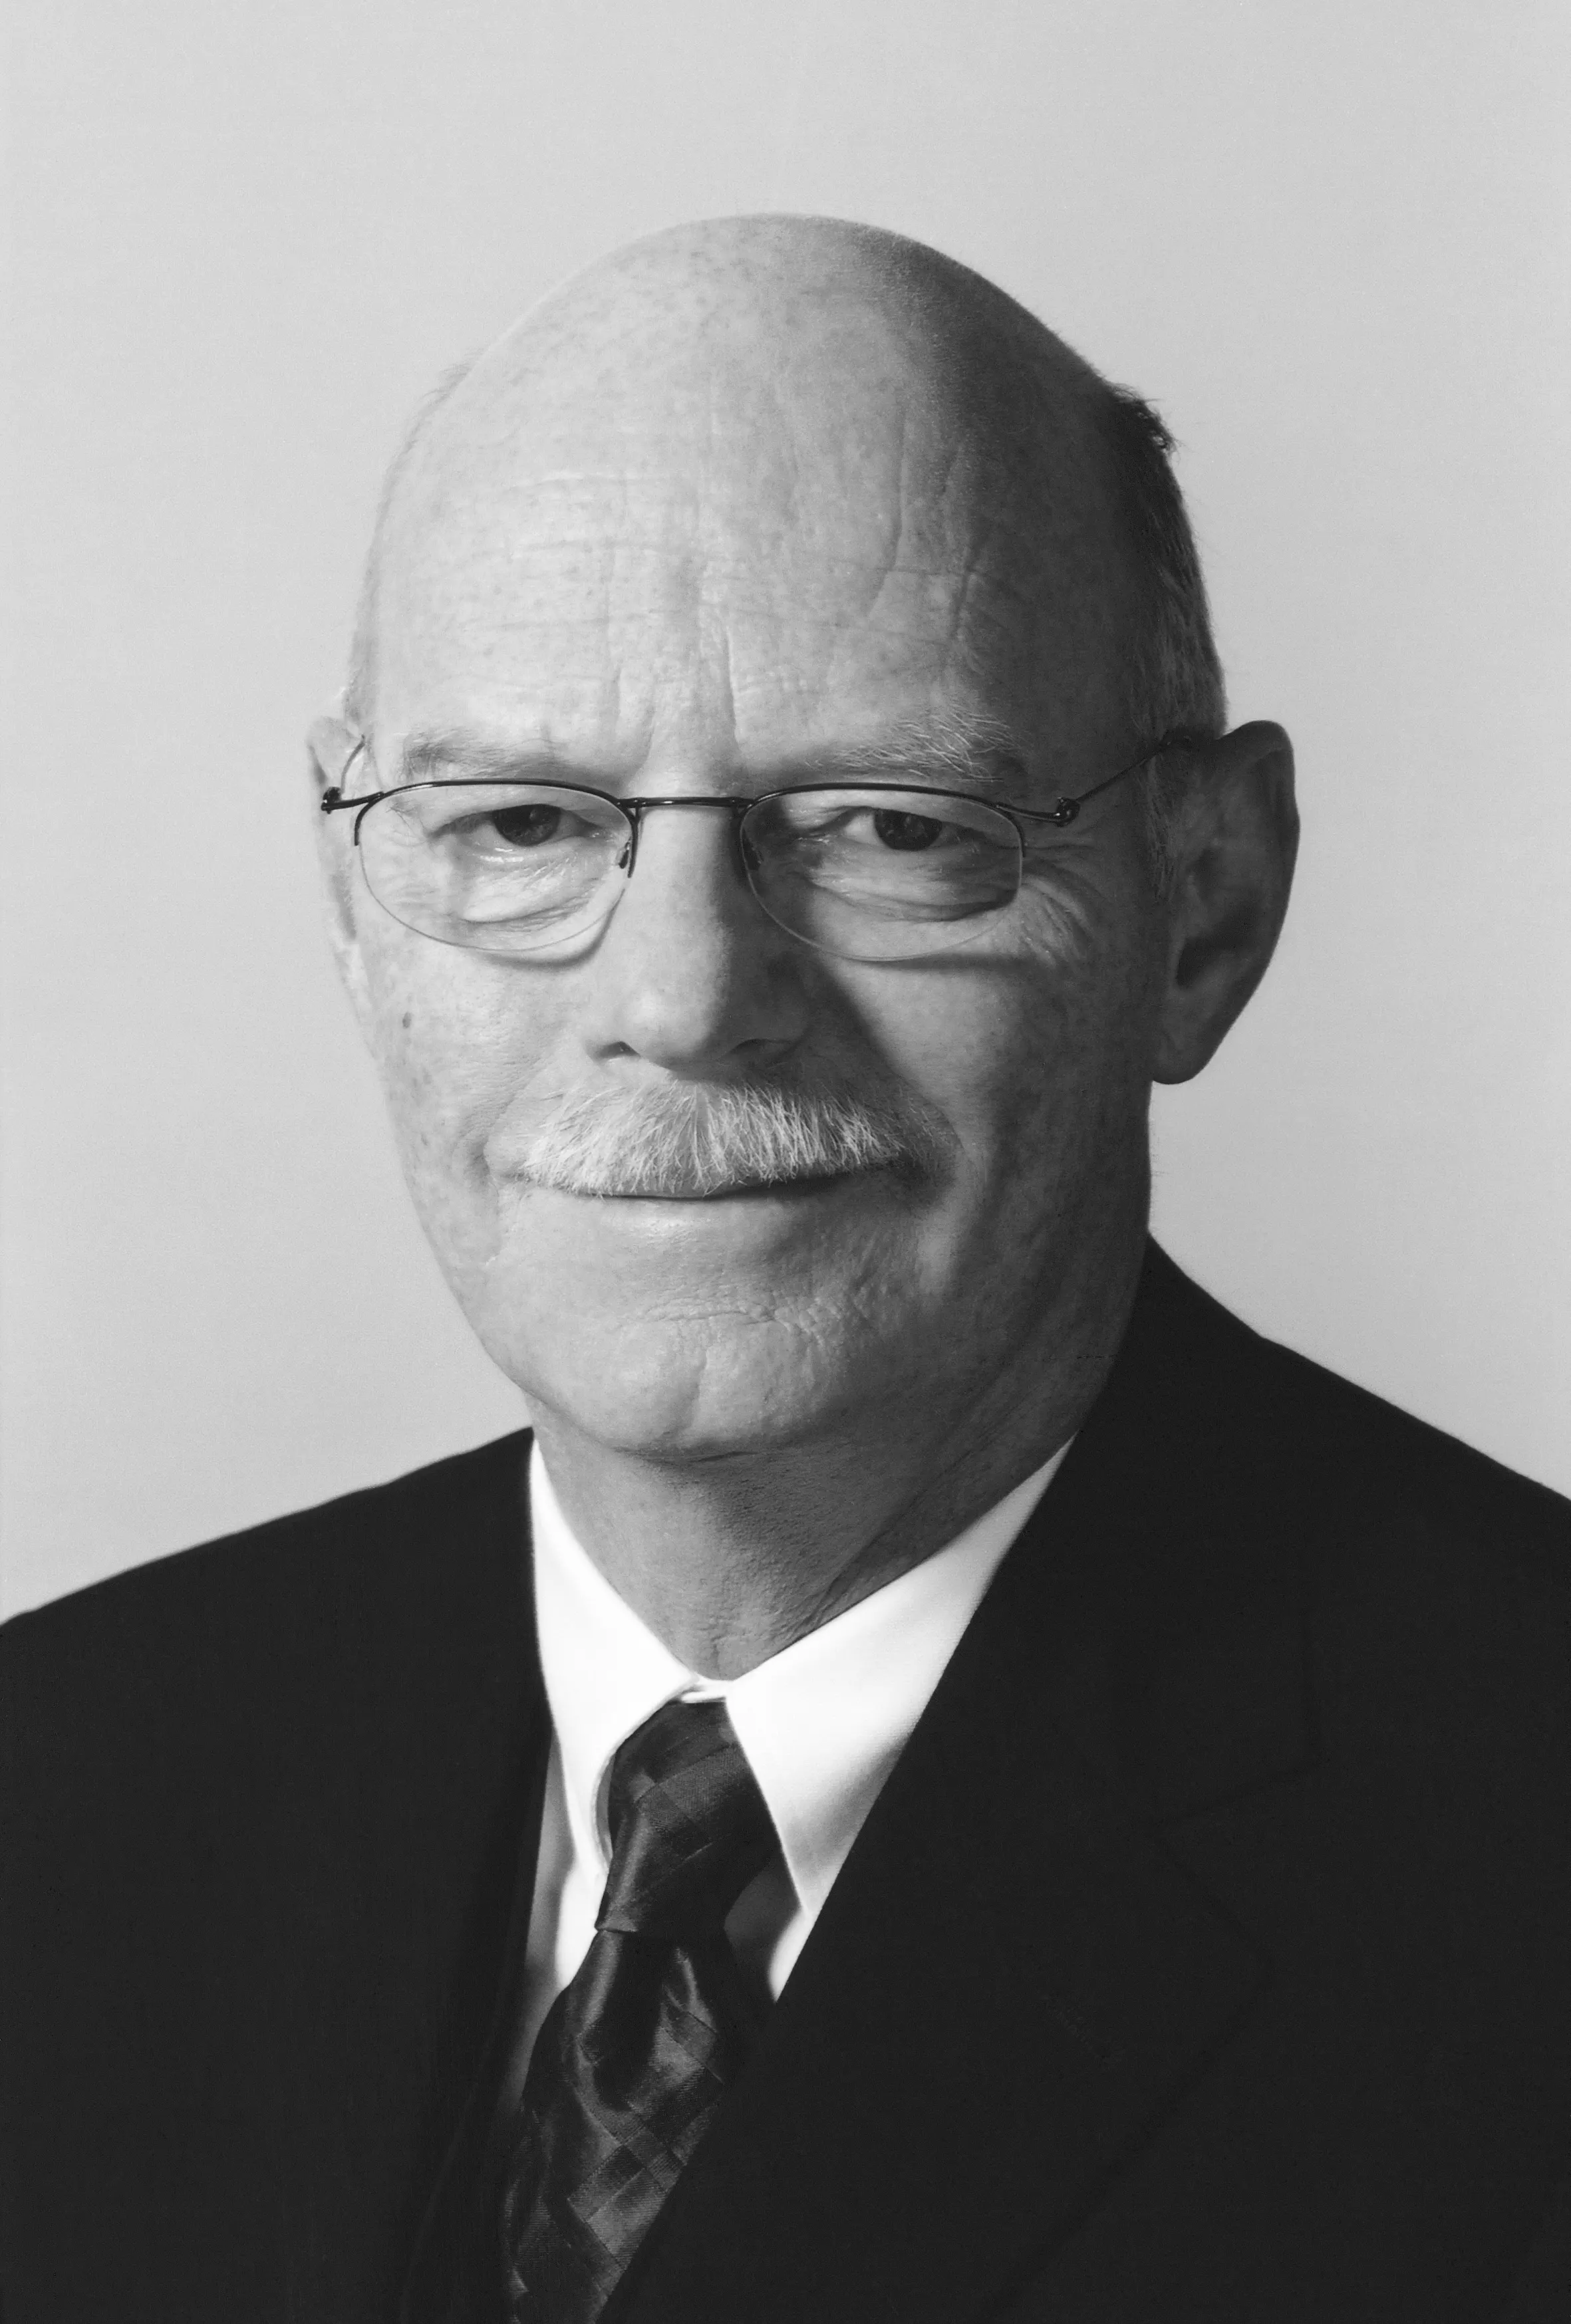 Porträt von Peter Struck mit Brille und Schnauzbart